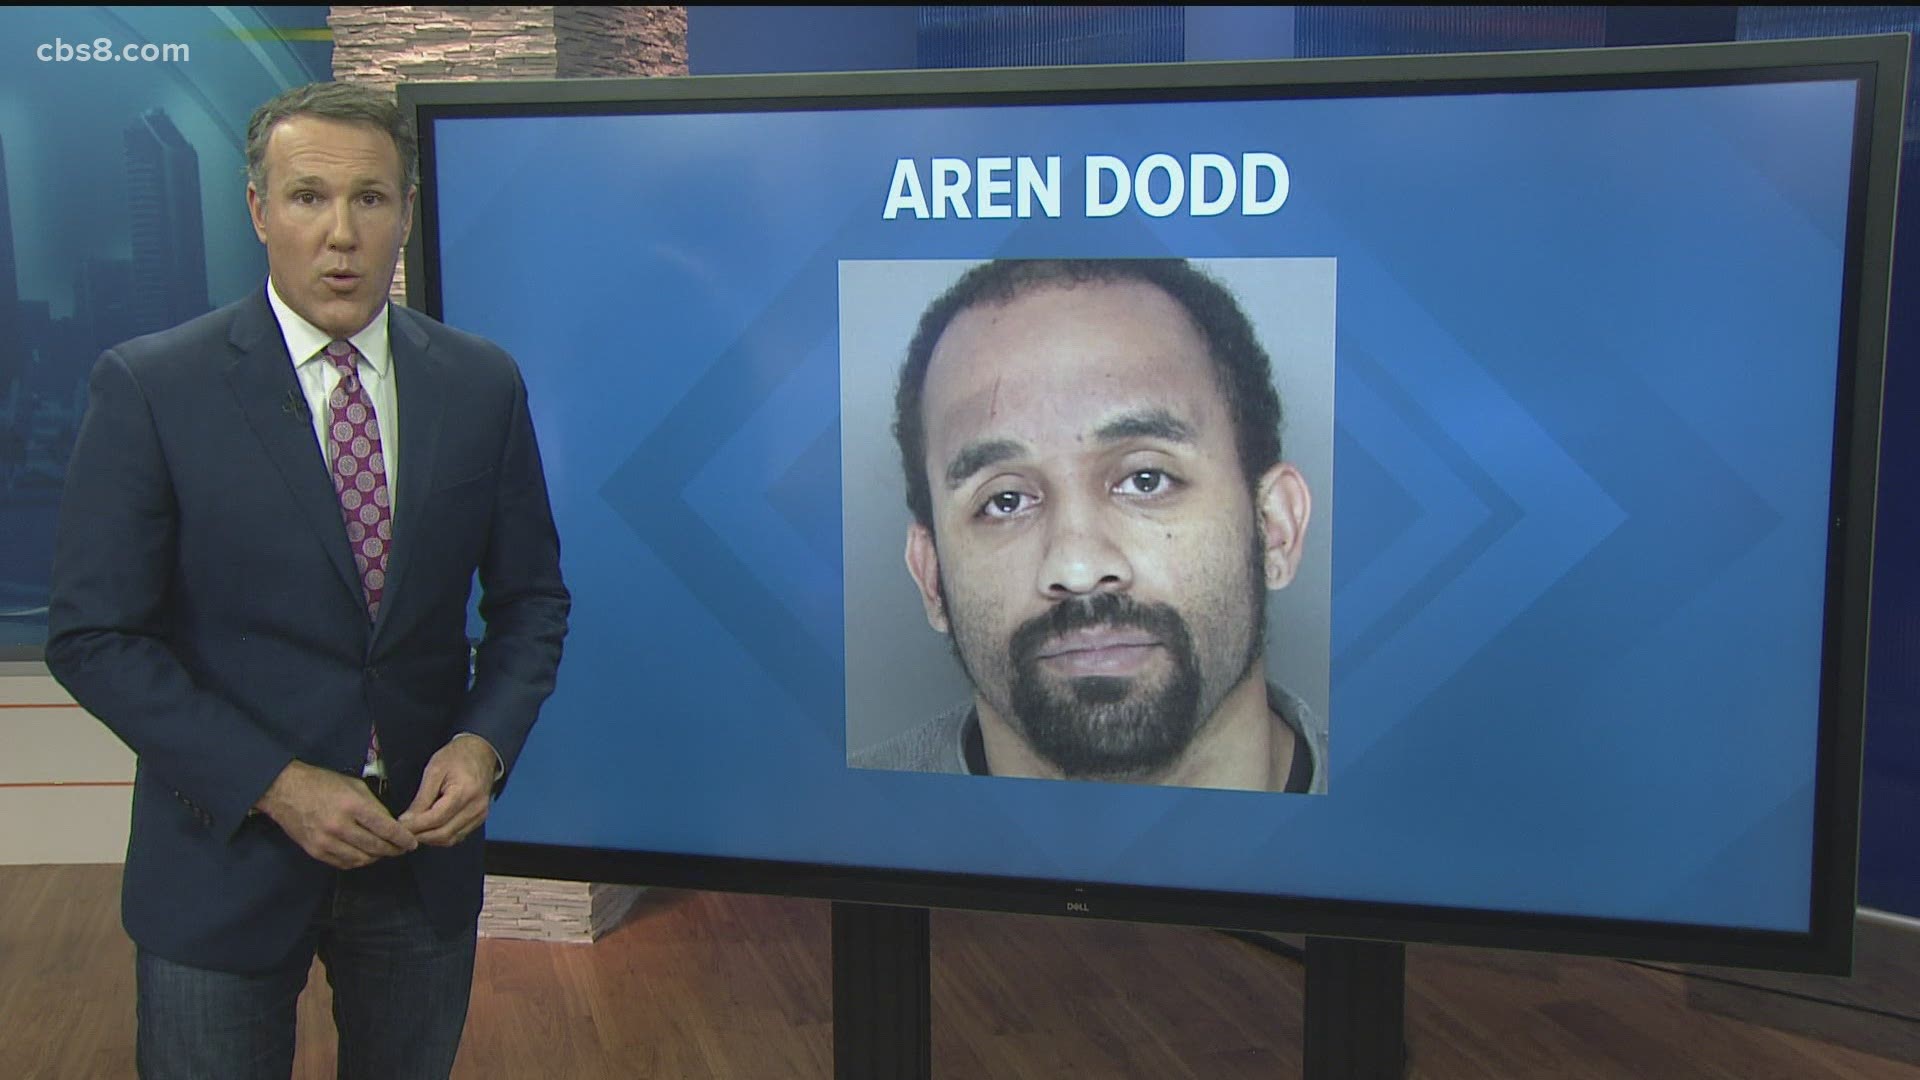 Aren Waddington Dodd is wanted for felony DUI.